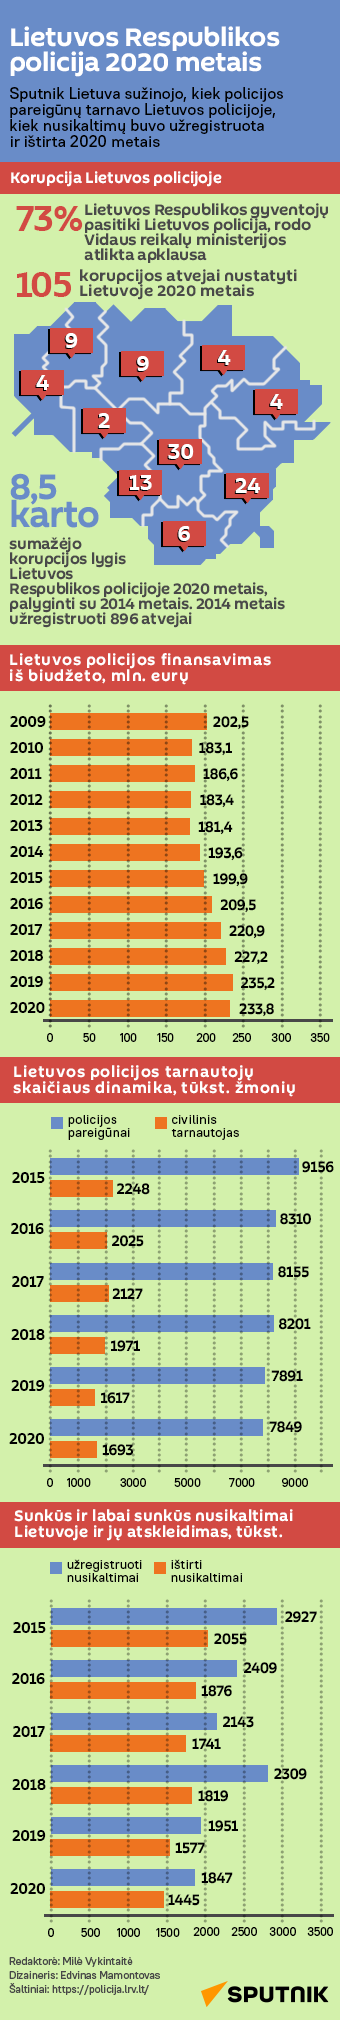 Lietuvos Respublikos policija 2020 metais - Sputnik Lietuva